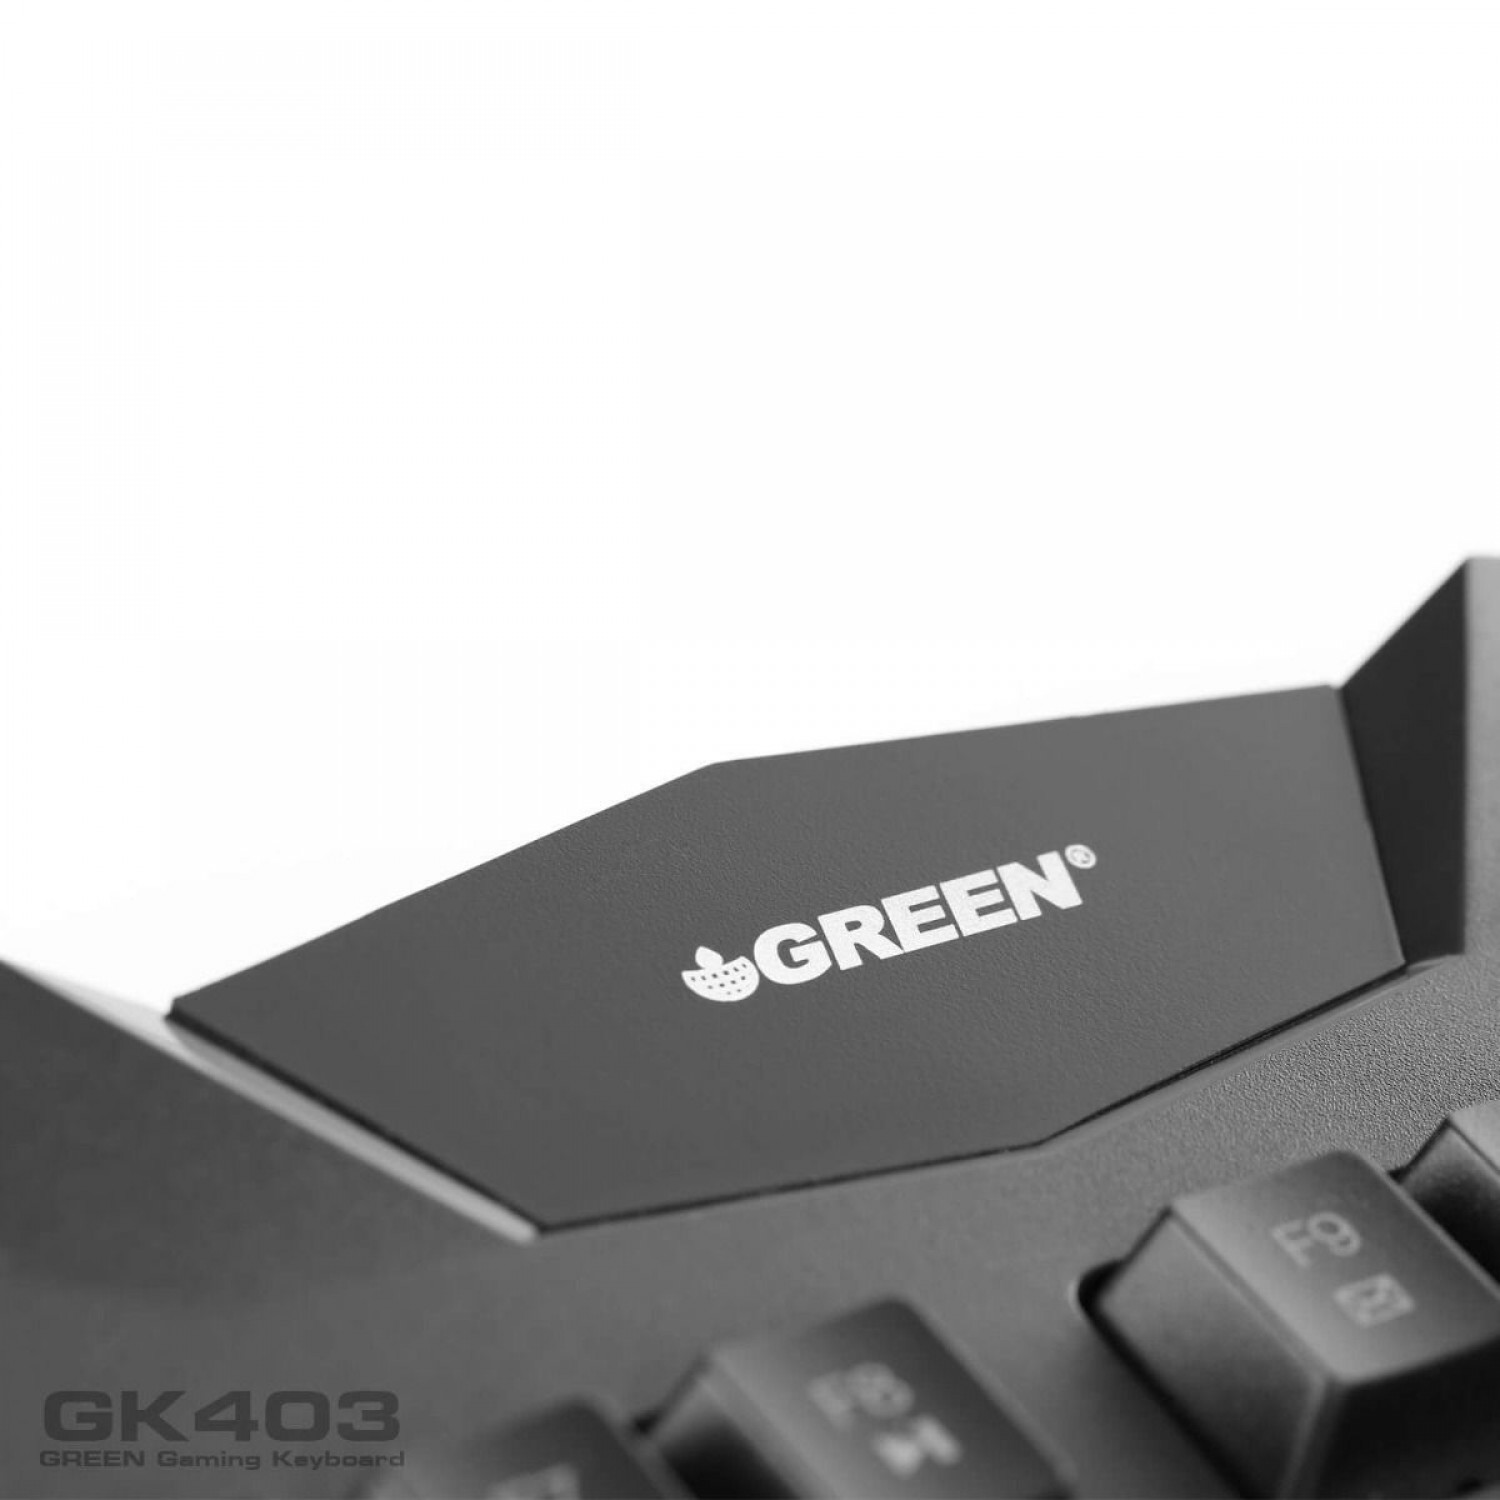 کیبورد Green GK403-2